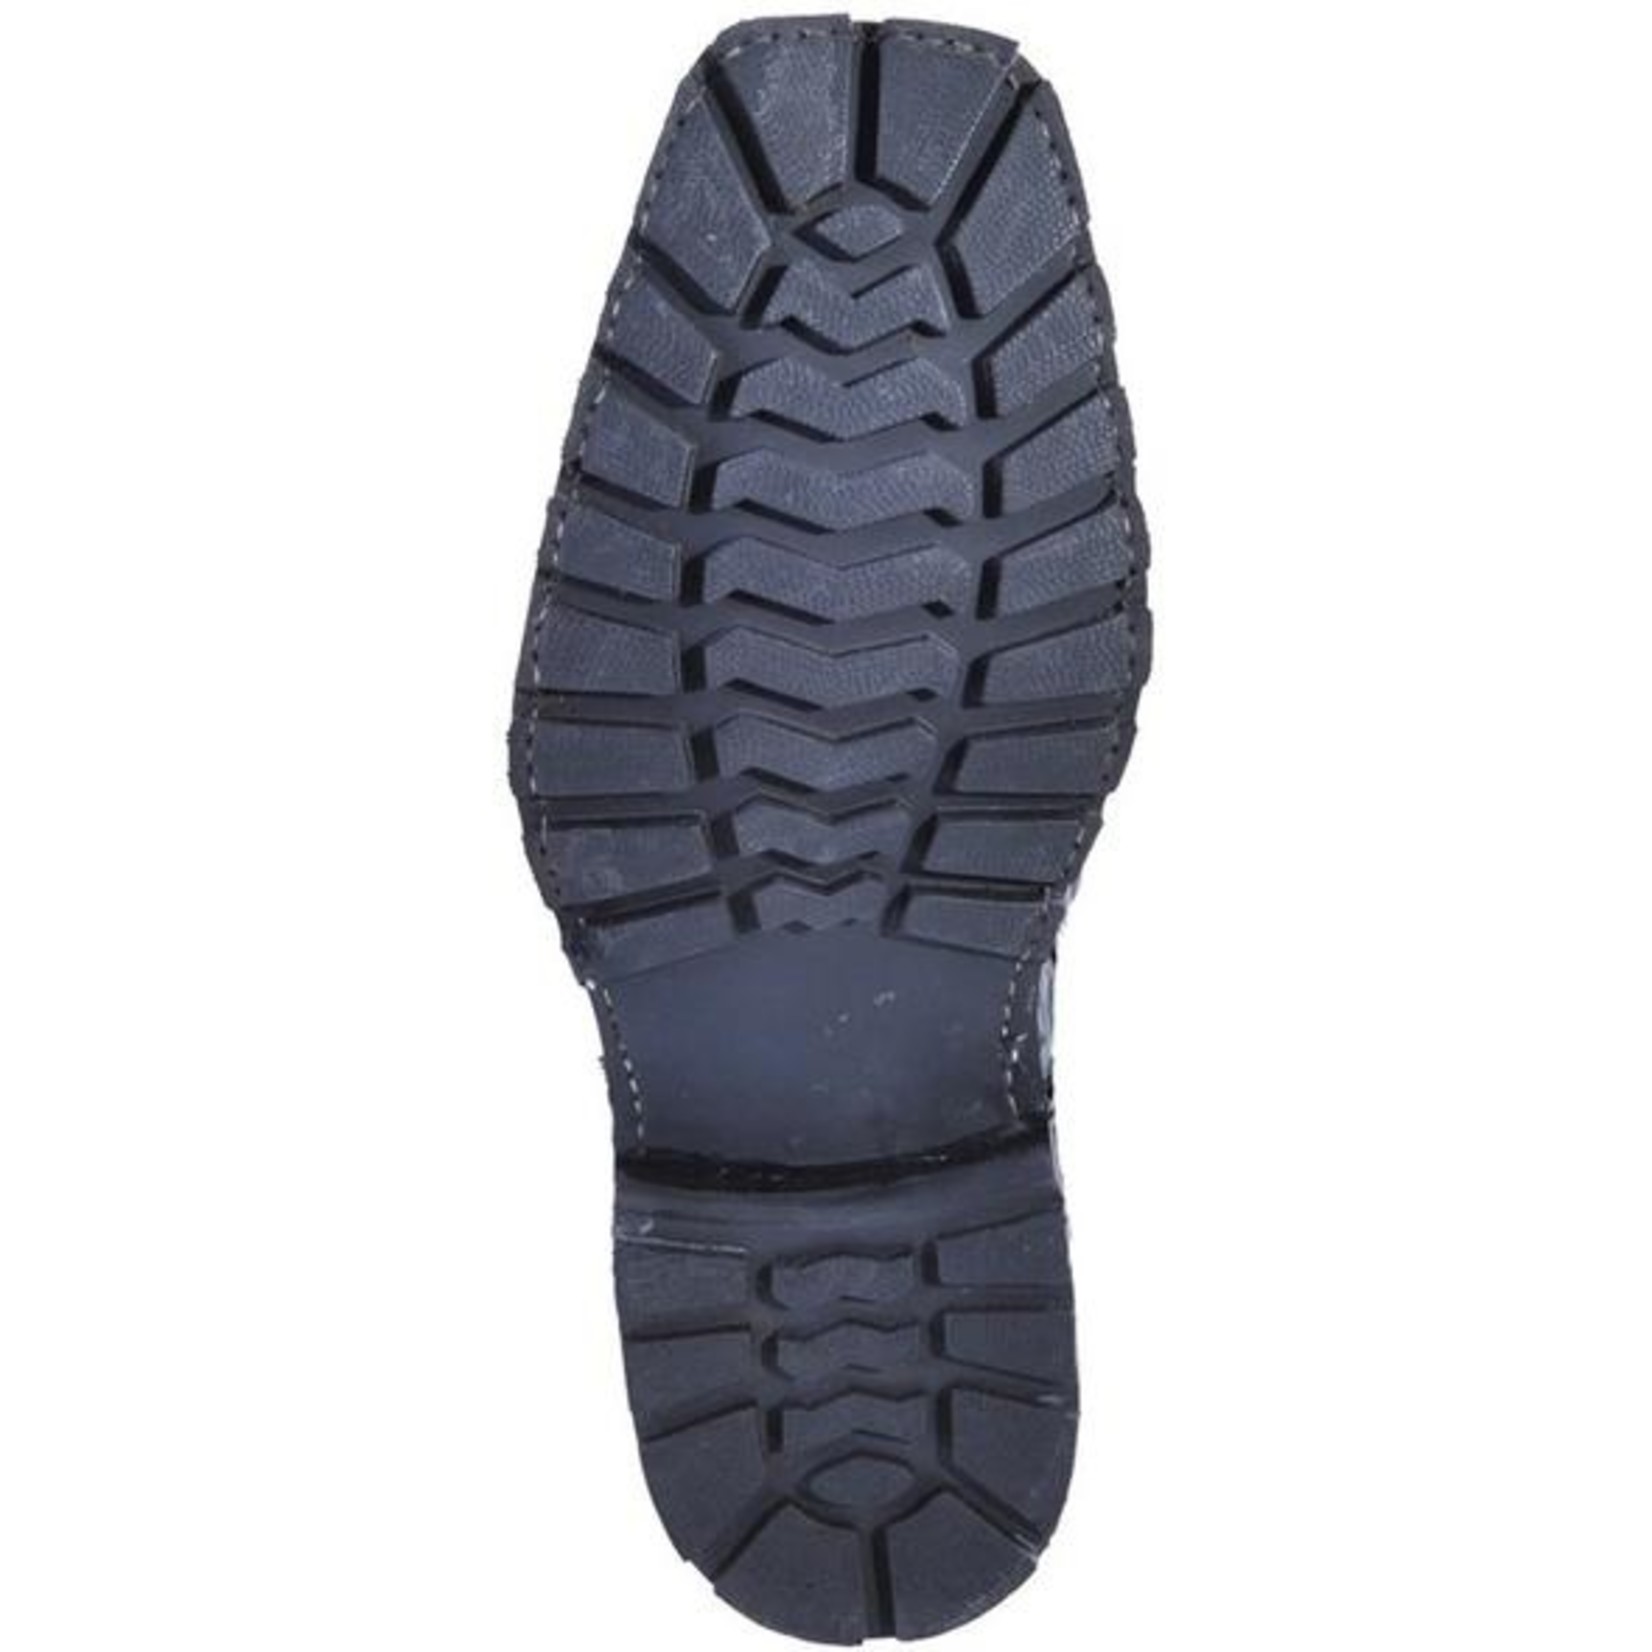 Men's Los Altos Harness Boot Caiman Tail Black 55T0105